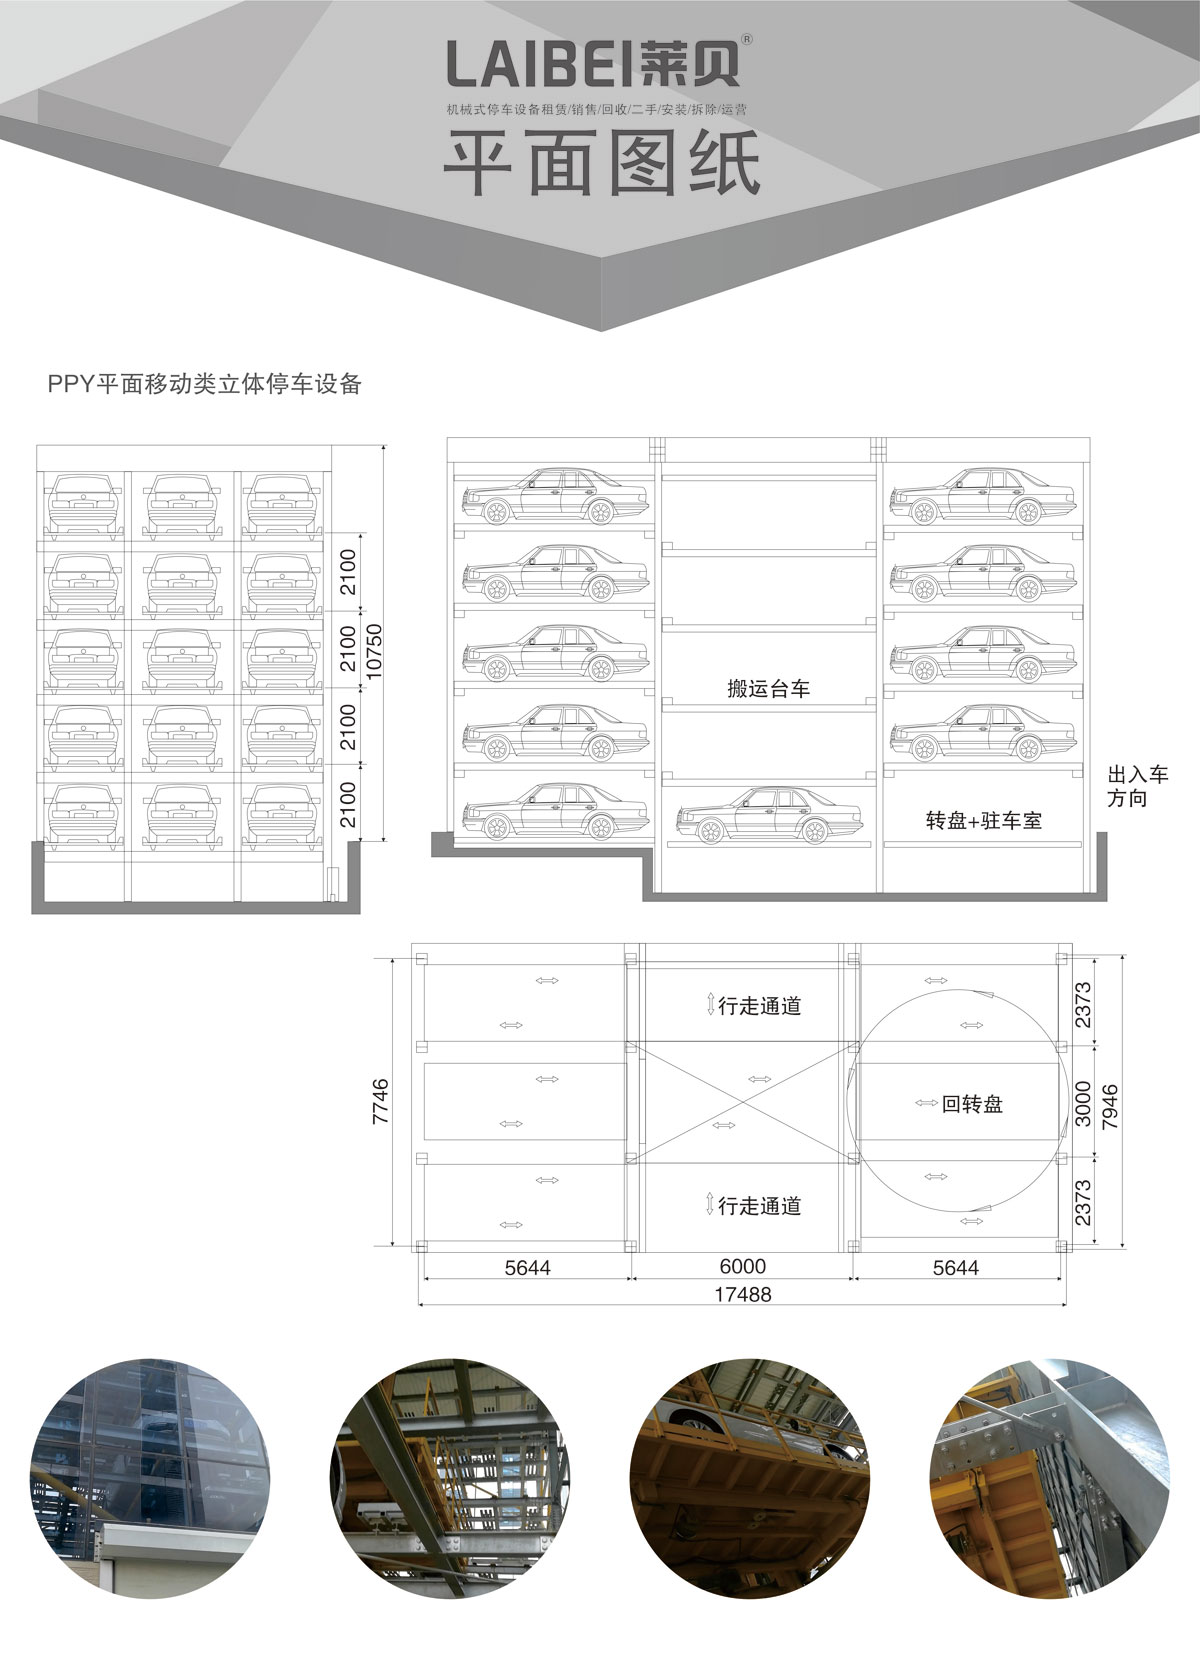 贵阳莱贝PPY平面移动机械式立体停车库平面图纸.jpg